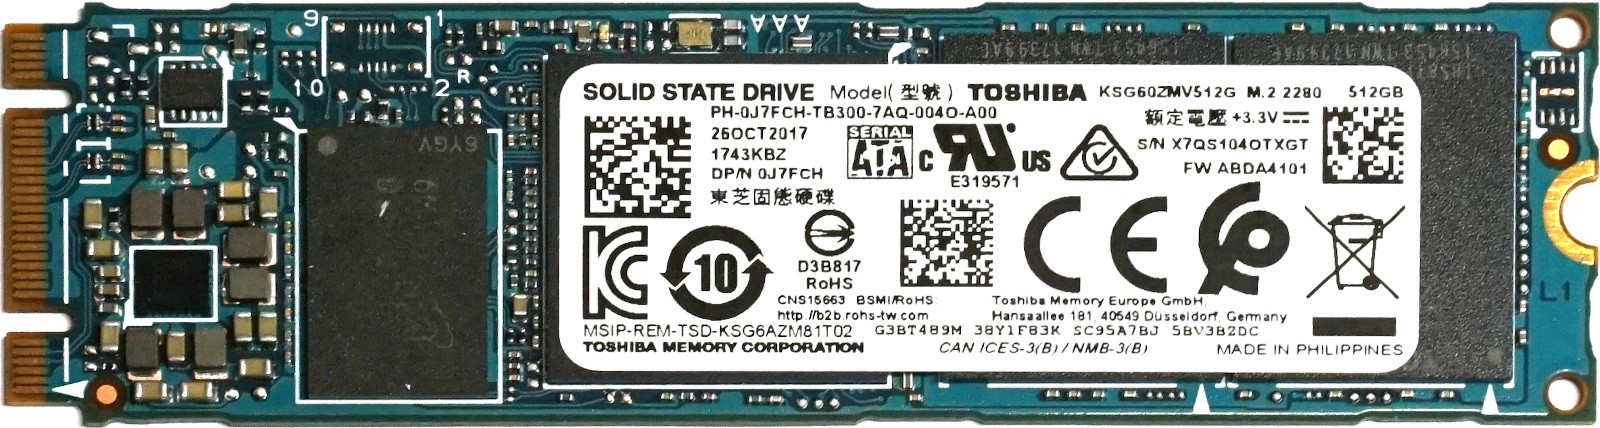 Dell (J7FCH) 512GB Toshiba SG6 Series SATA (M.2 2280) TLC SSD